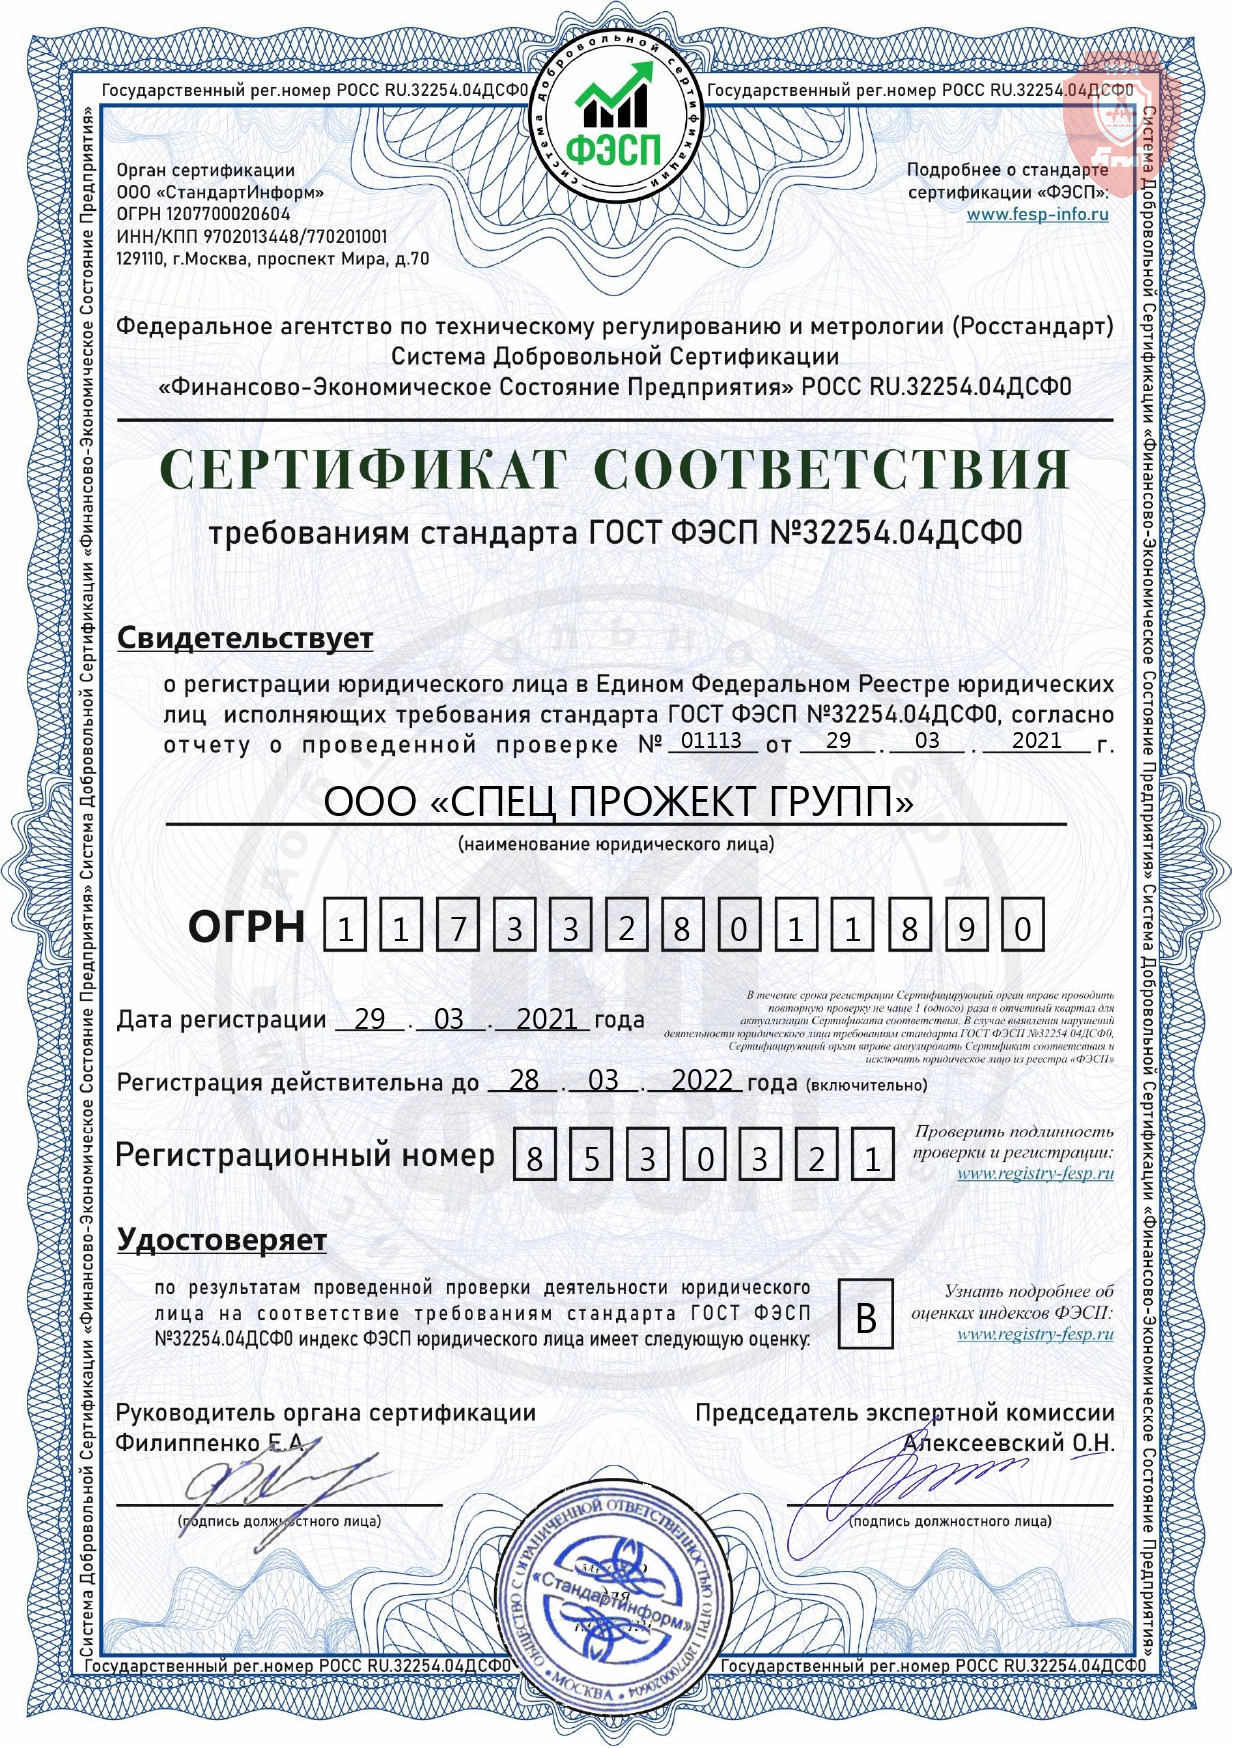 Сертификат соответствия требованиям ГОСТ ФЭСП